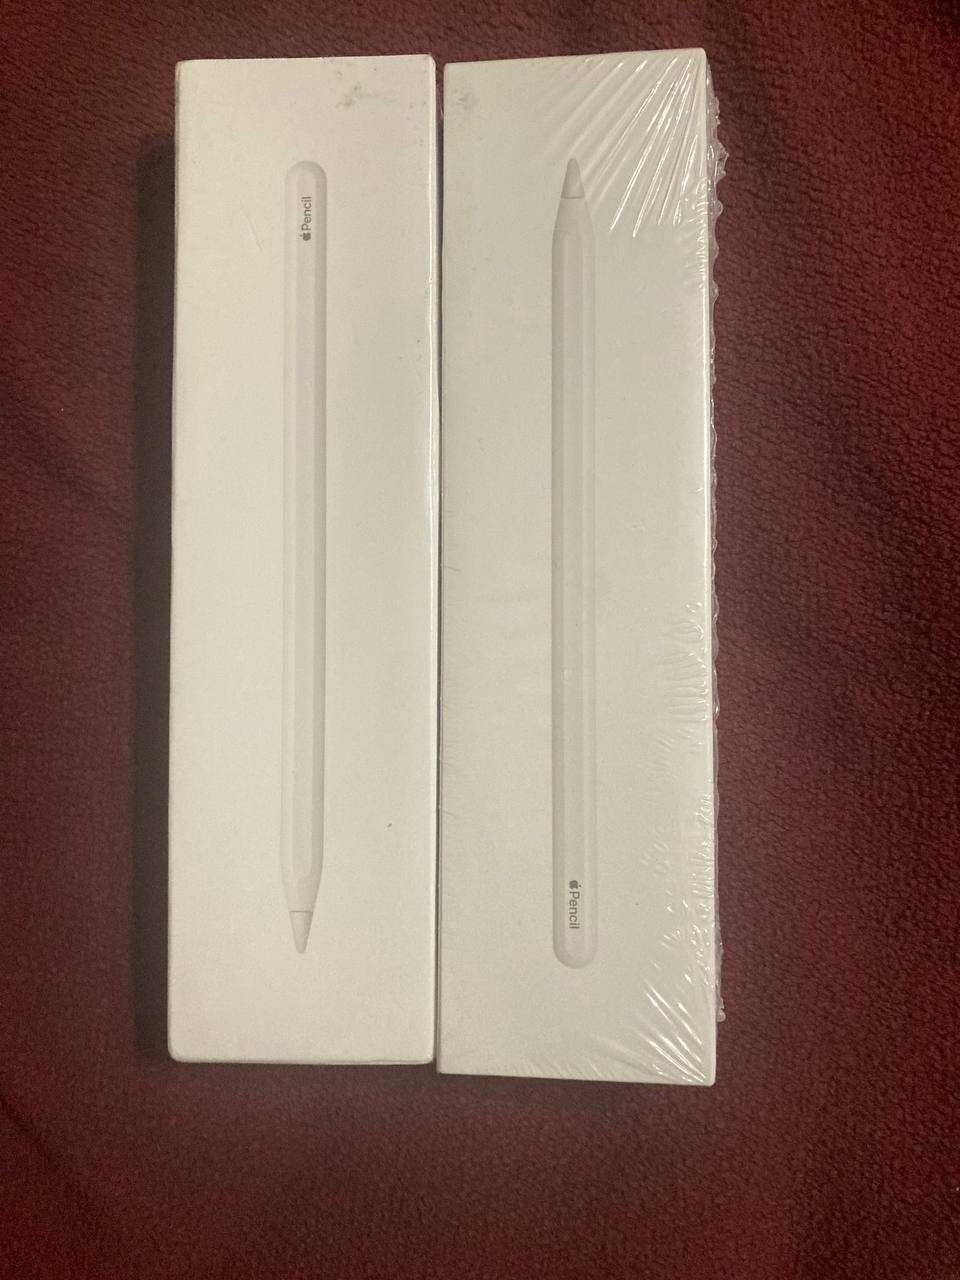 Apple pencil 2. Б/У. В коробці. Apple pencil. Оригінал.